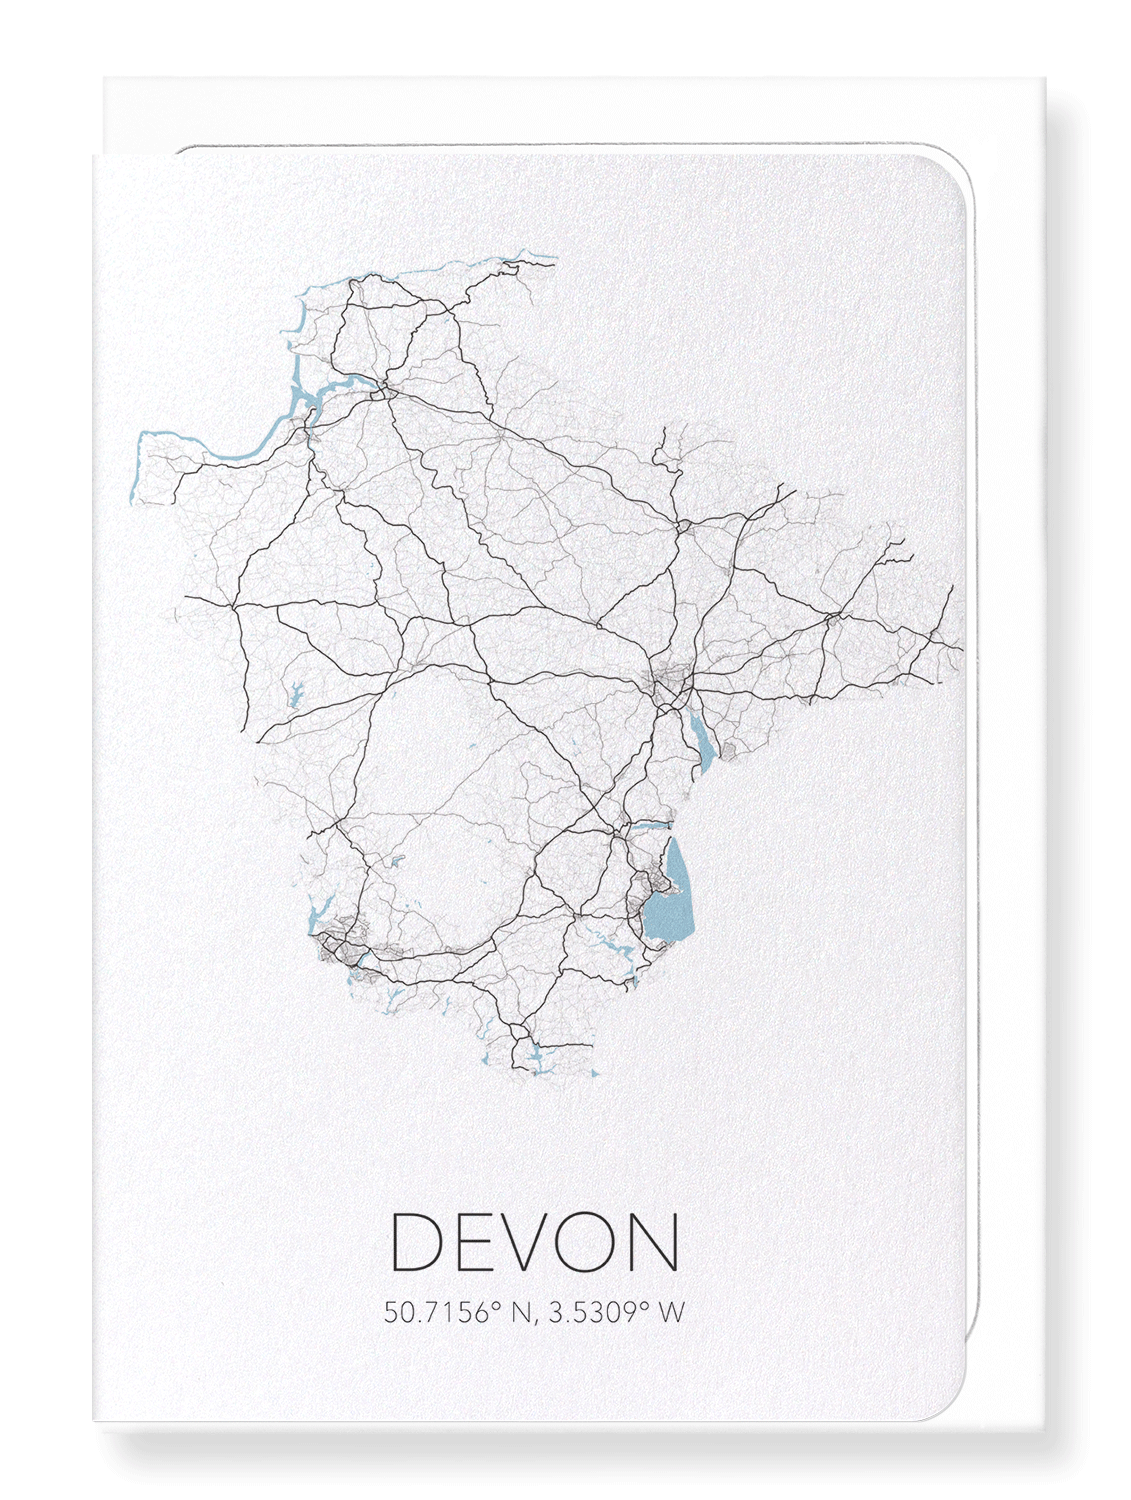 DEVON CUTOUT: Map Cutout Greeting Card